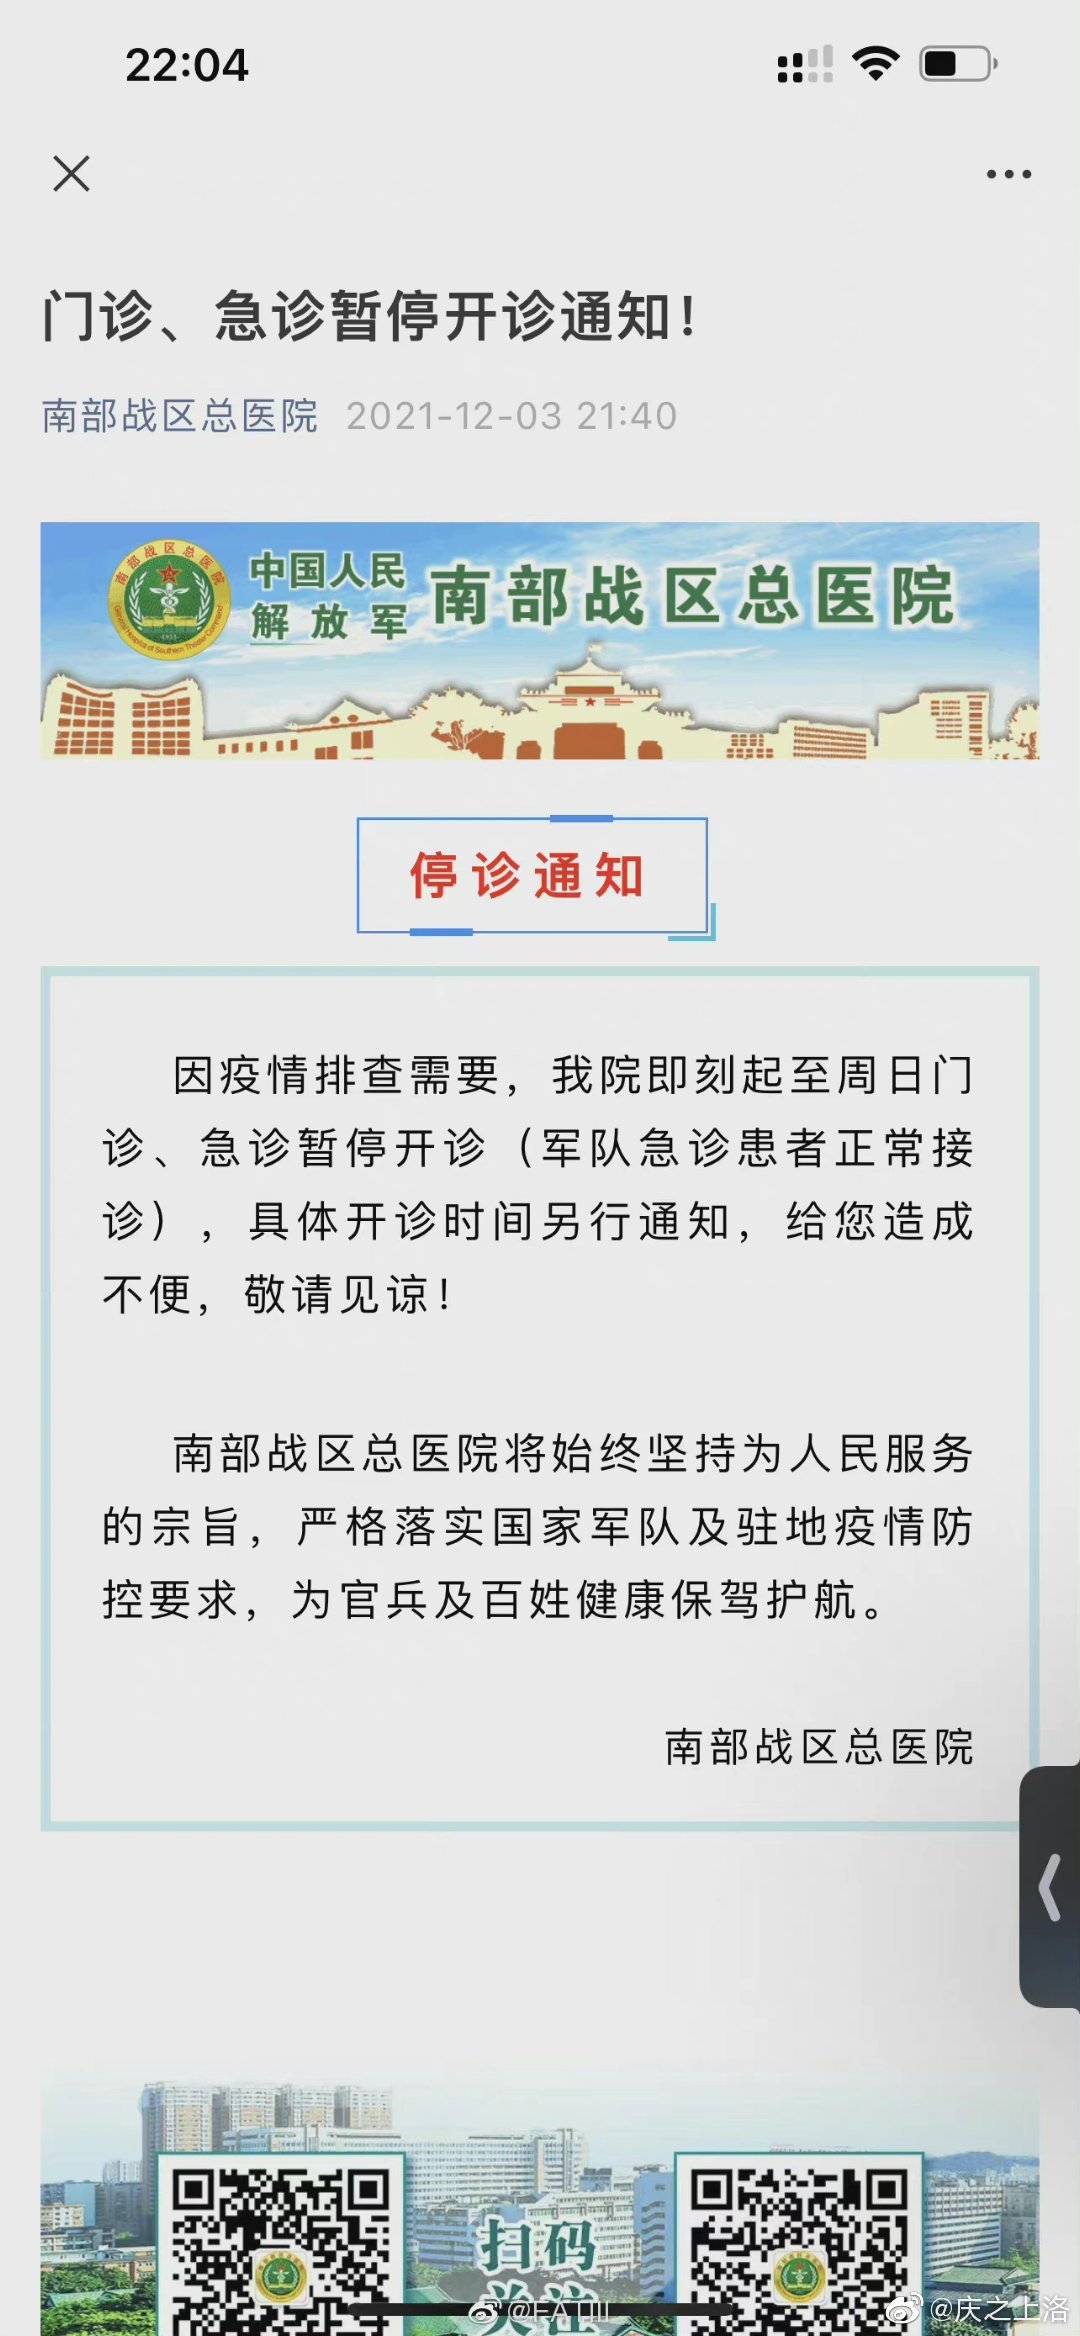 广州南部战区总医院：即刻起至周日门诊、急诊暂停开诊